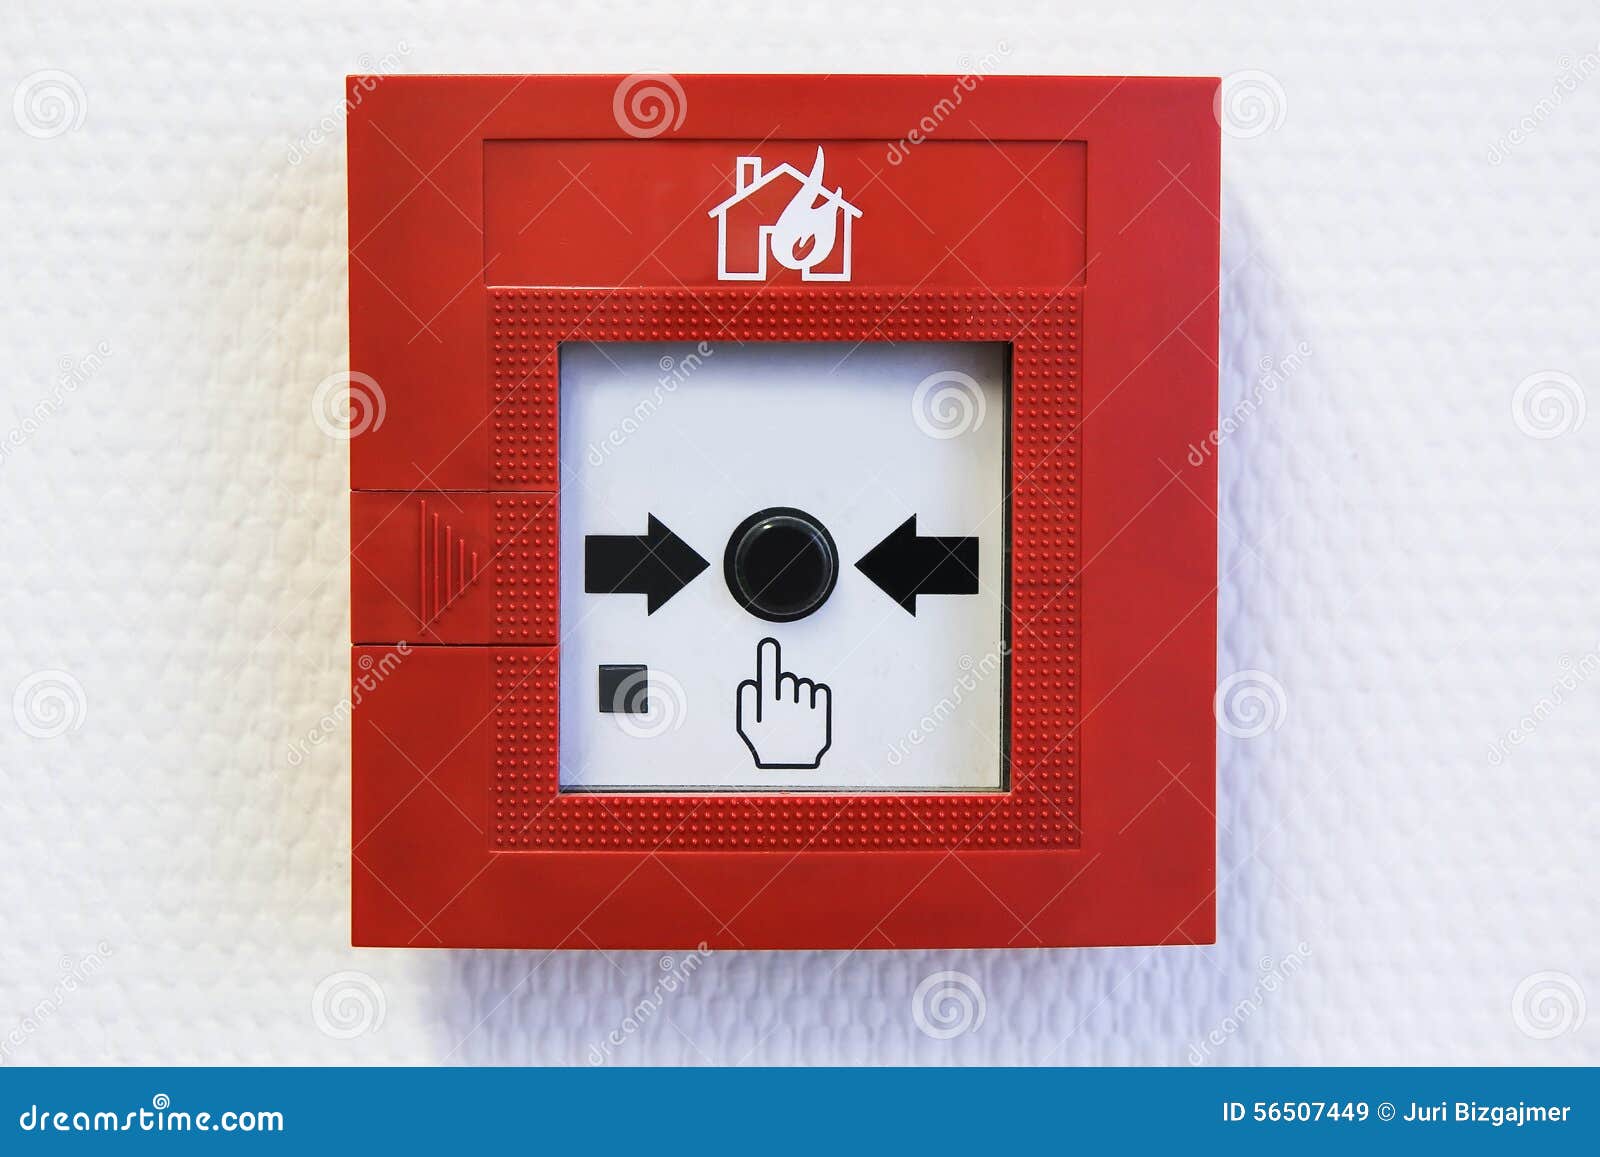 Аварийная пожарная сигнализация. Пожарная сигнализация на стене. Кнопка пожарной сигнализации на стене. Аварийная кнопка пожарной сигнализации. Наклейки на кнопки аварийной пожарной сигнализации.